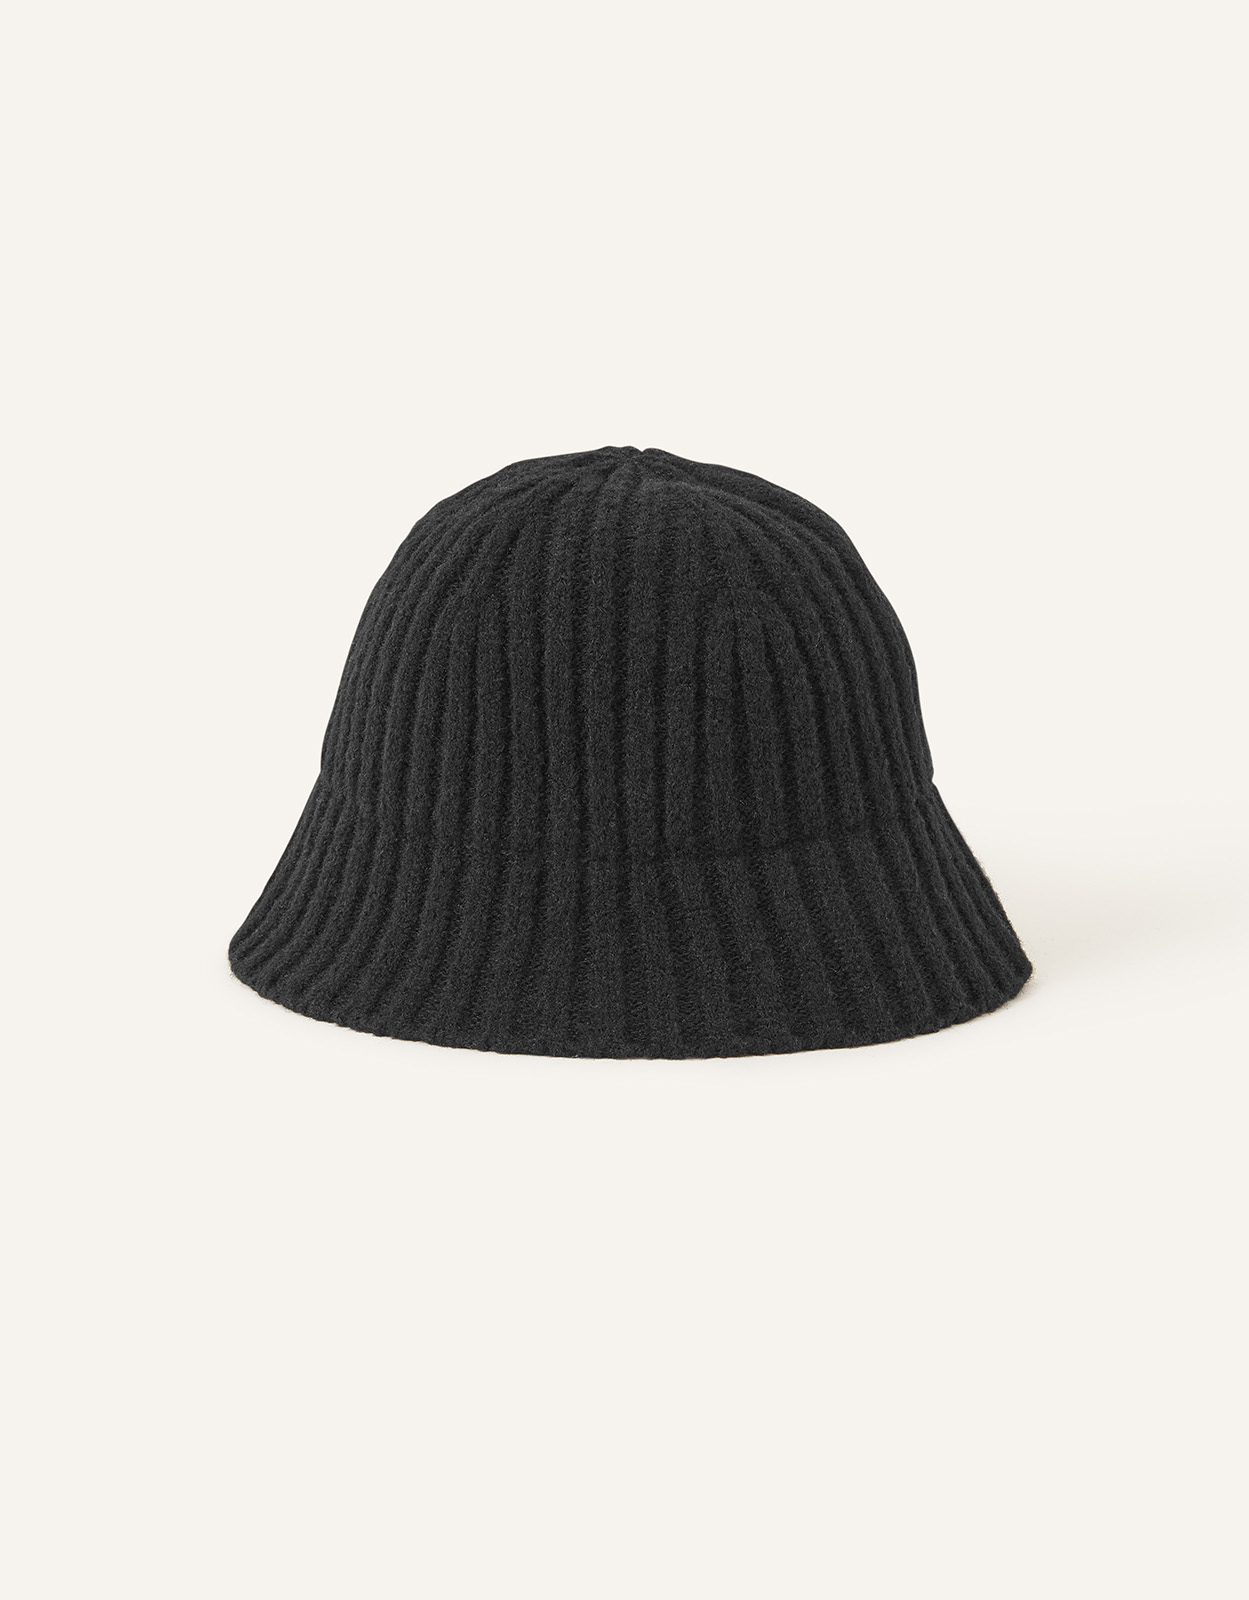 Accessorize Women's Knit Bucket Hat Black